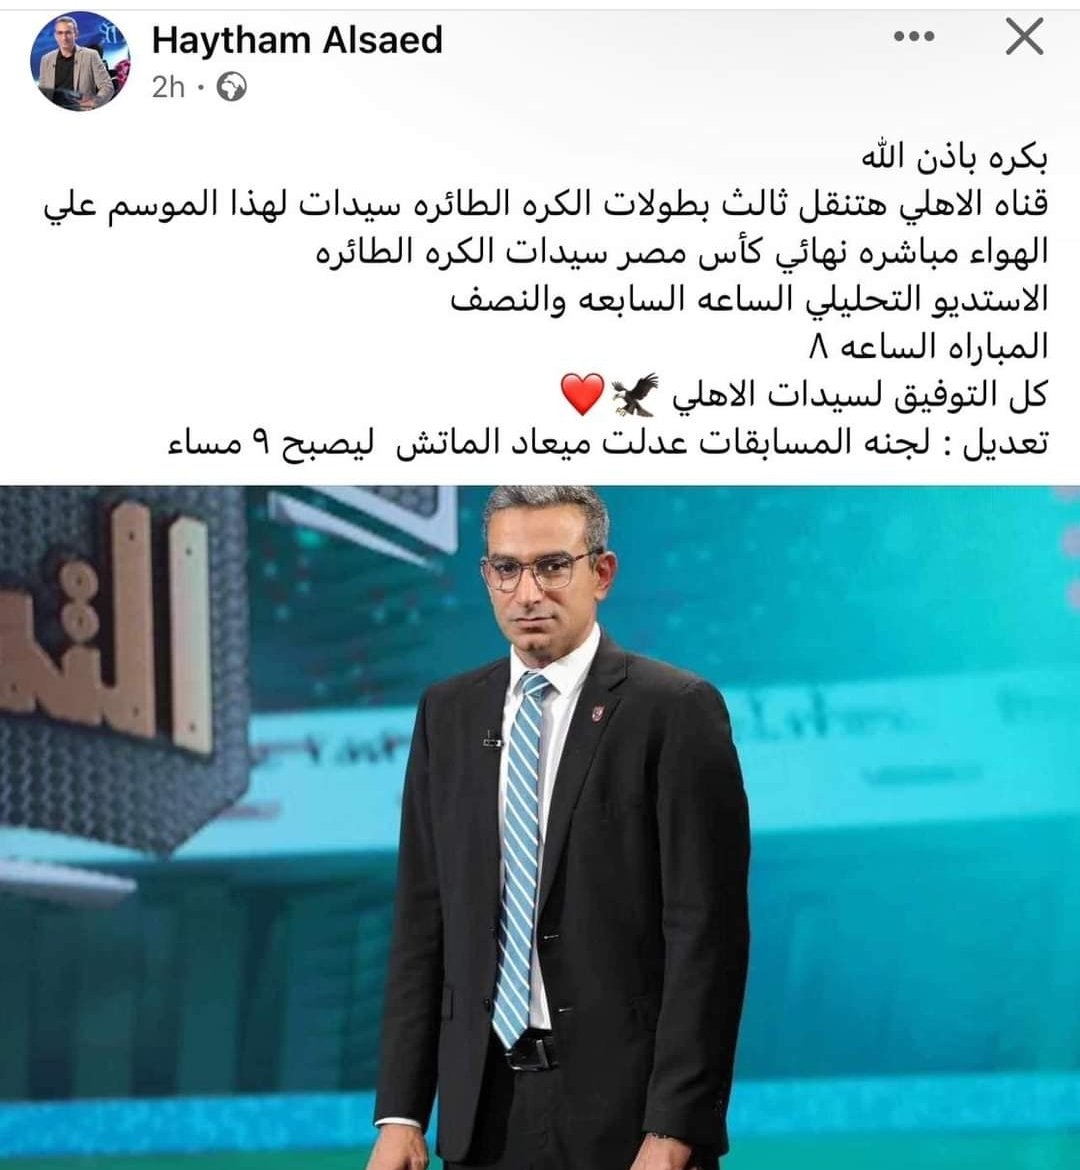 هيثم السعيد مقدم برامج الصالات في قناه الاهلي عبر صفحته على فيسبوك